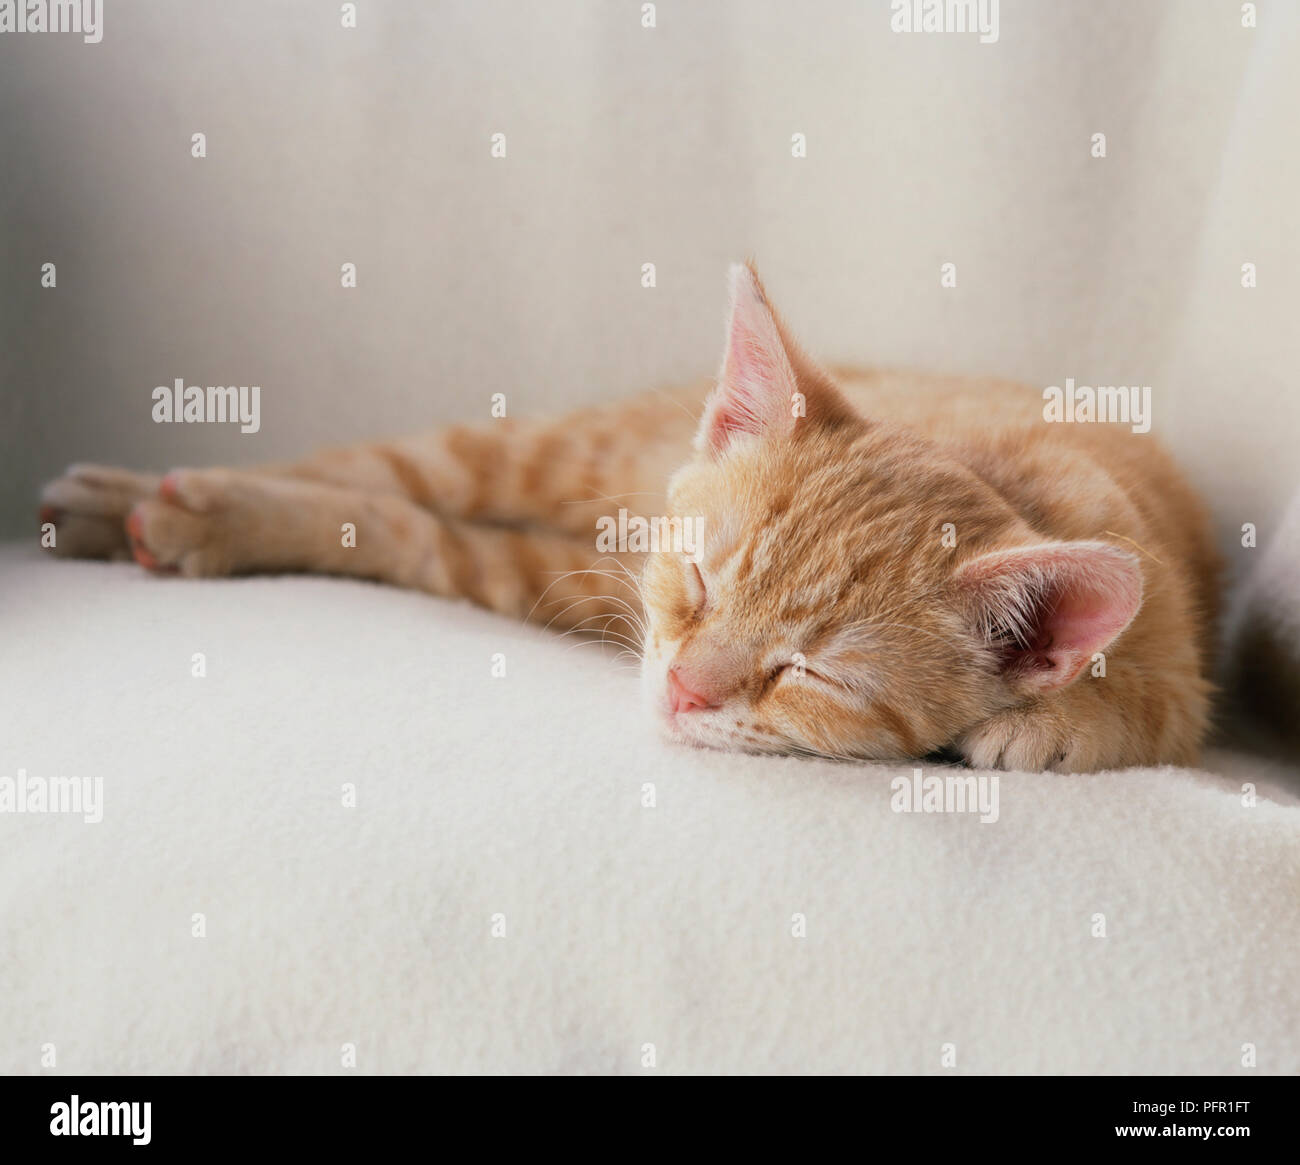 Ginger kitten sleeping on a white blanket Stock Photo